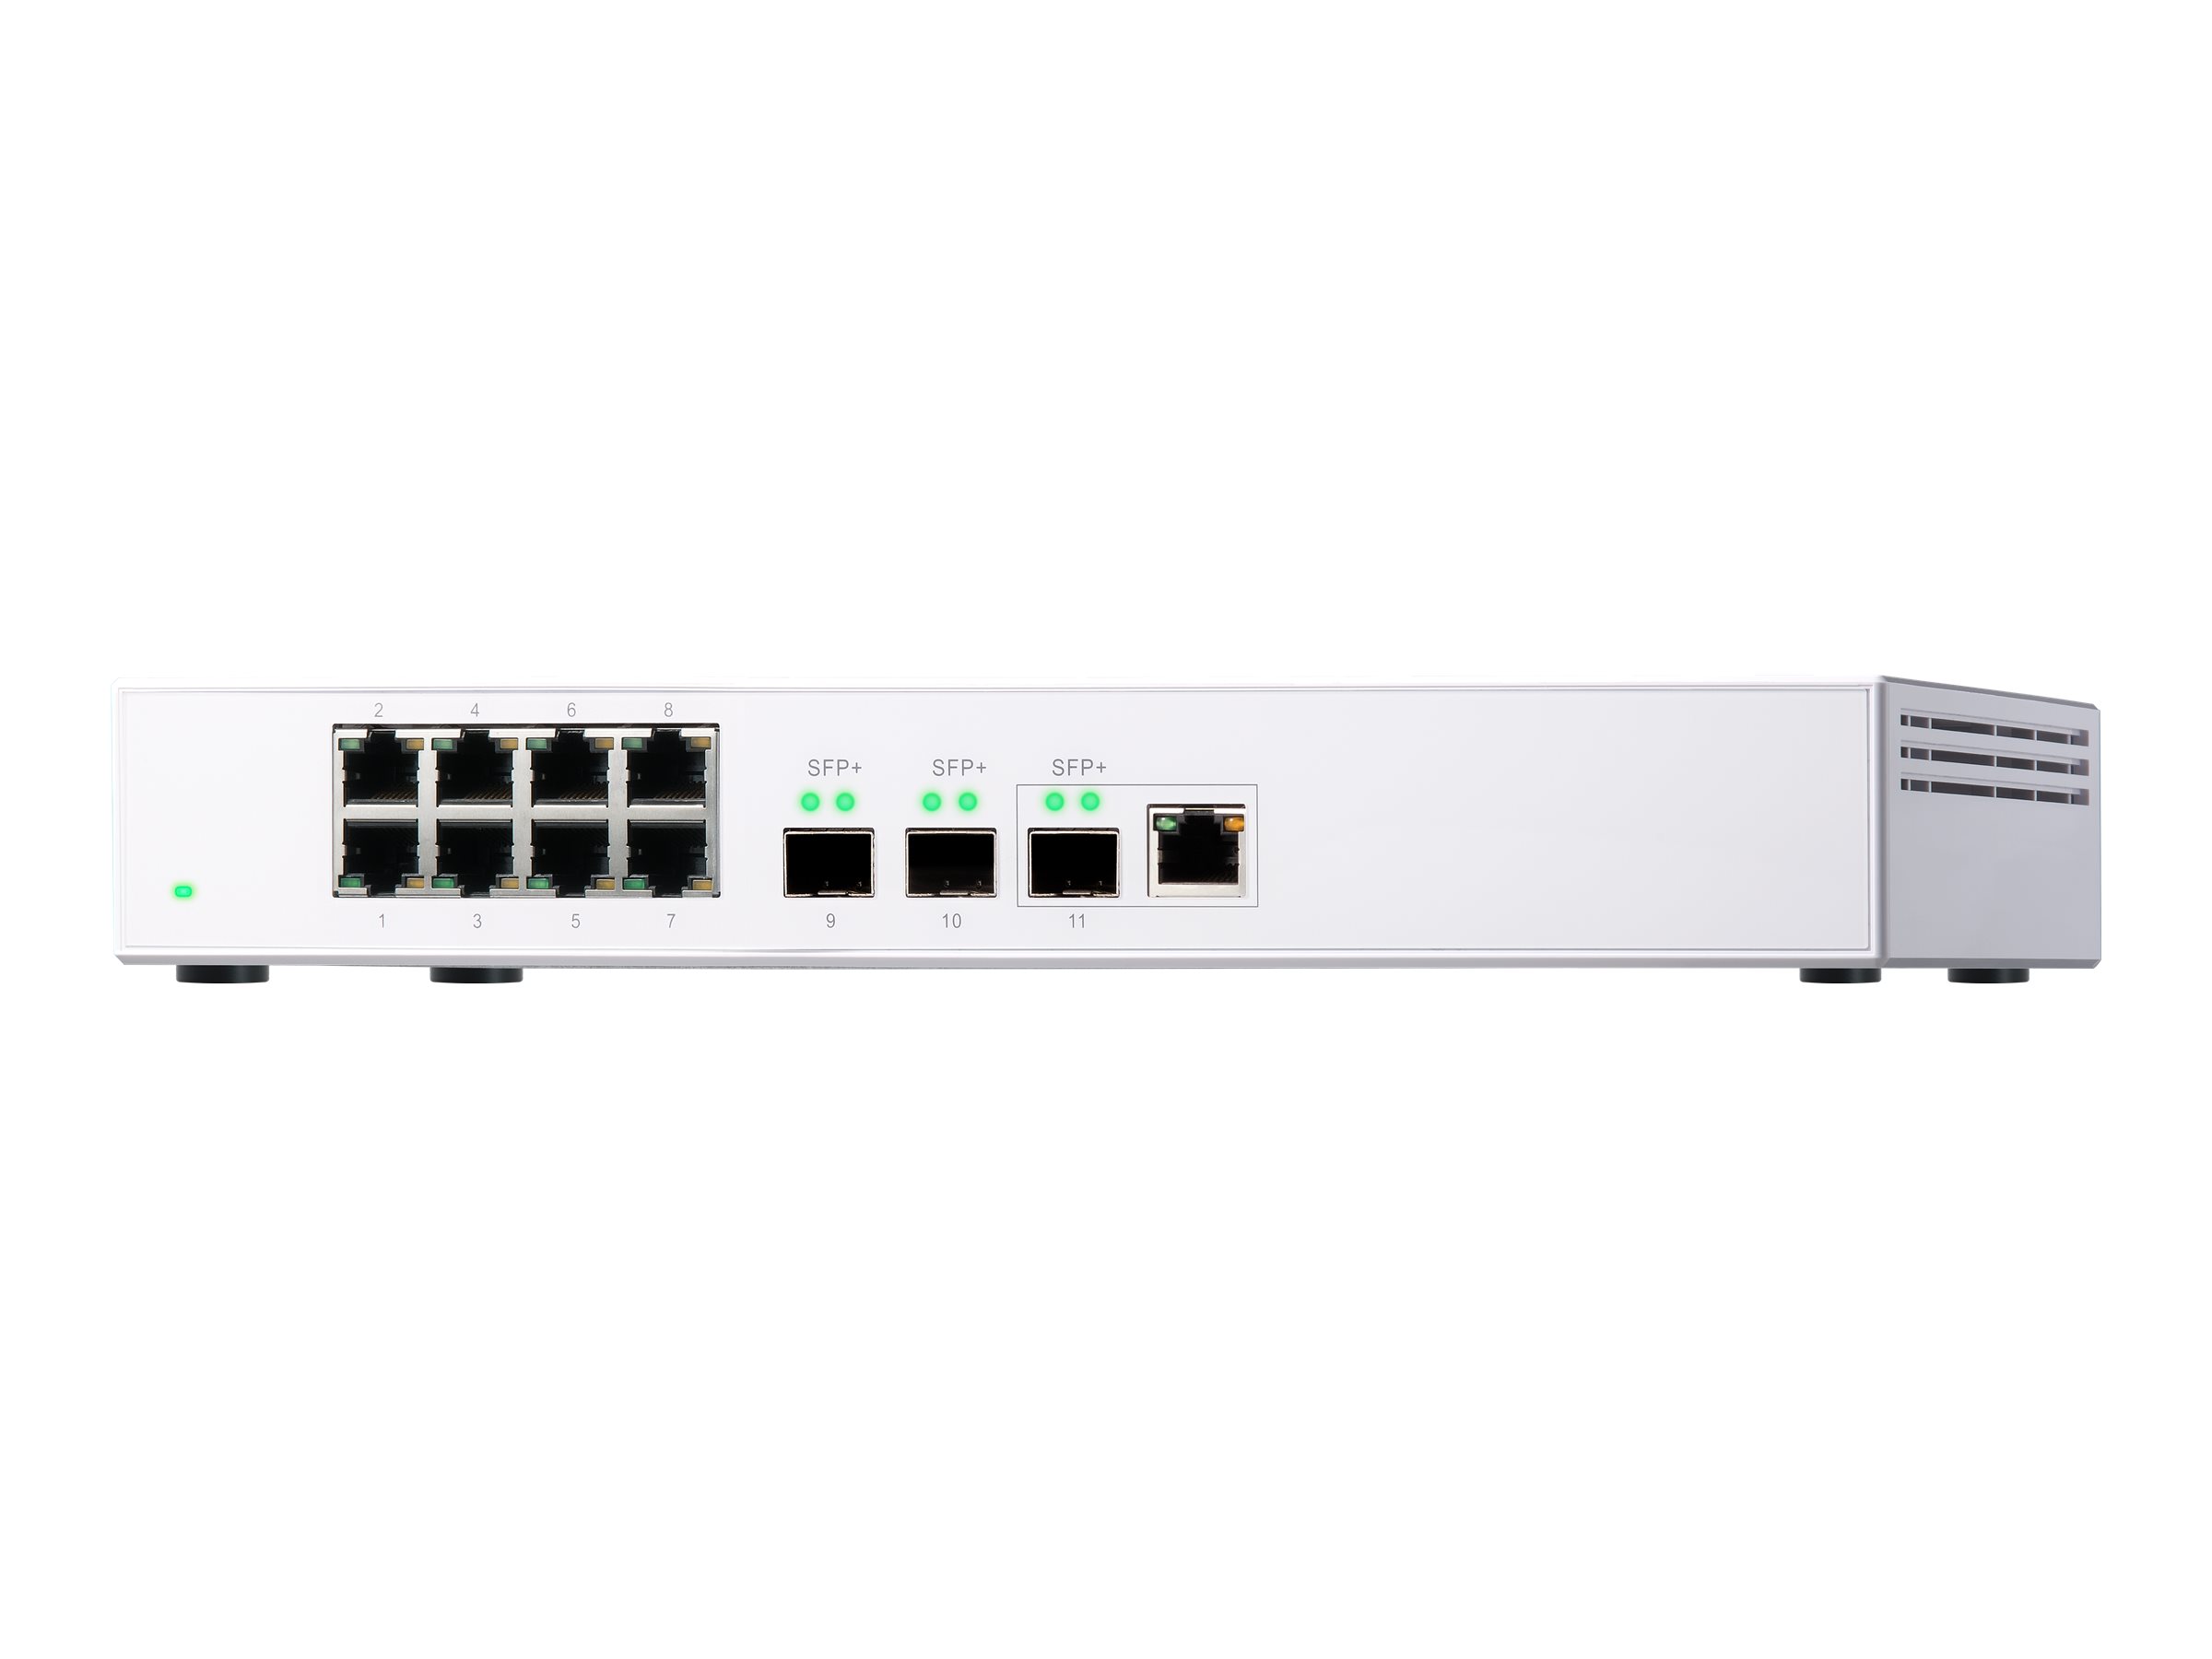 QNAP QSW-308-1C - Switch - unmanaged - 2 x 10 Gigabit SFP+ + 1 x C 10 G-Bit SFP+ + 8 x 10/100/1000